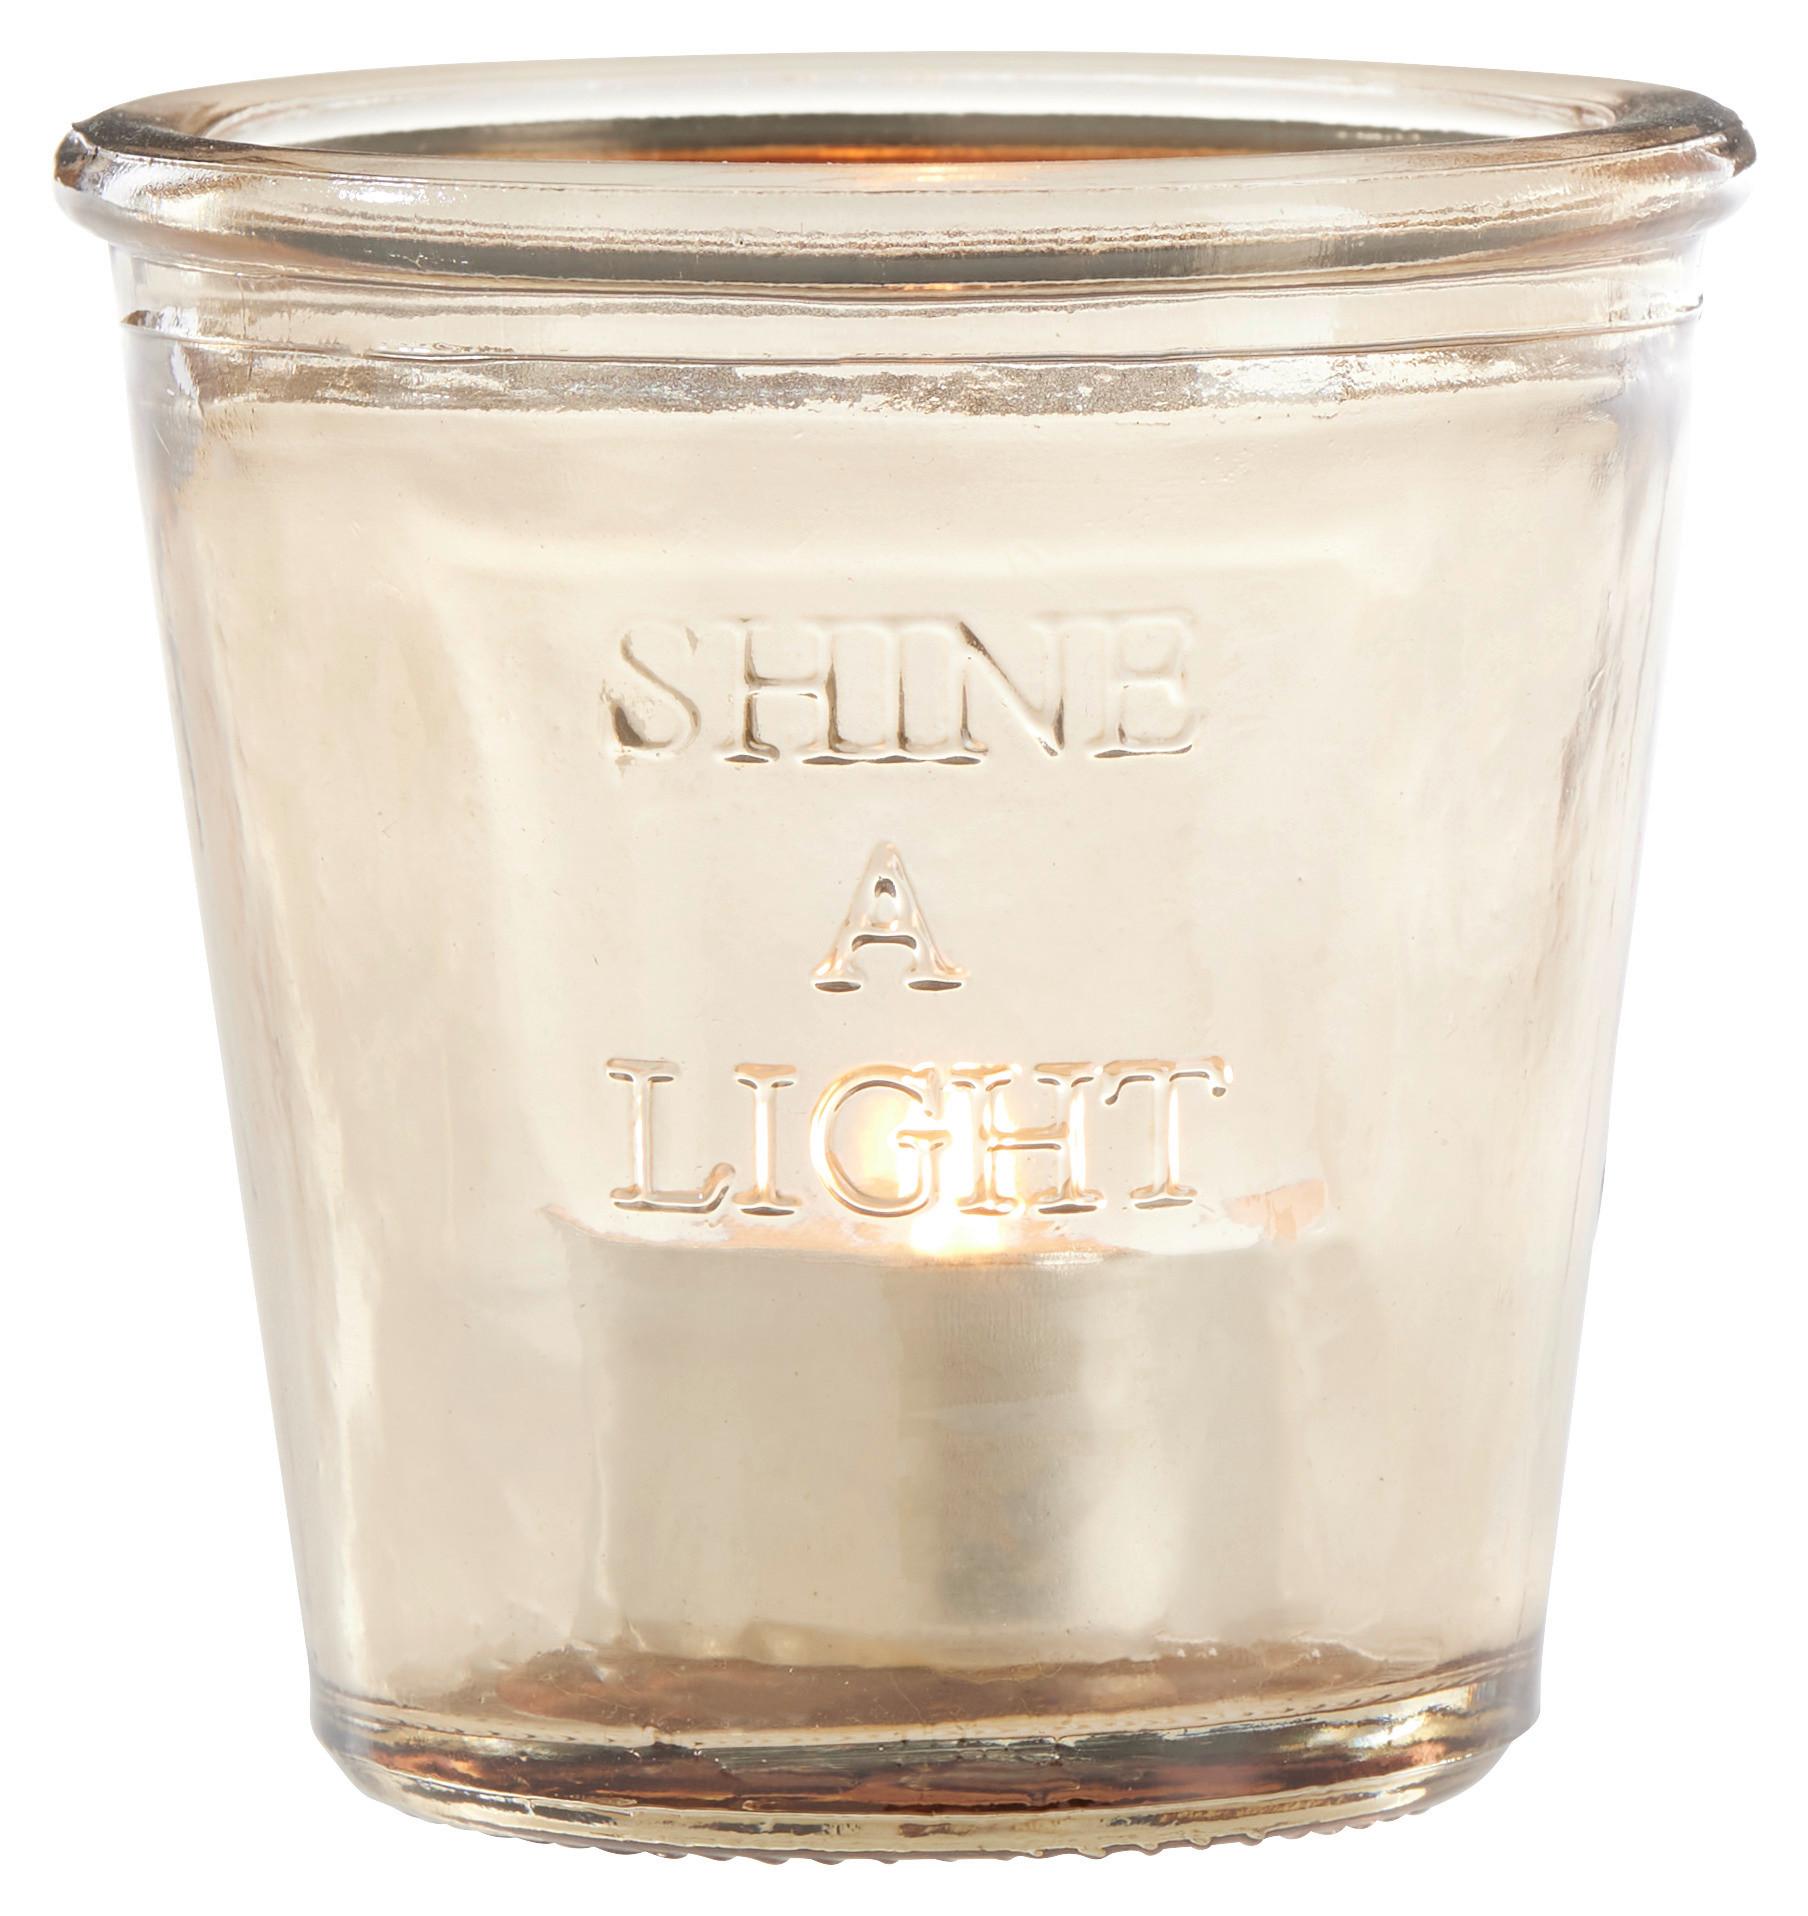 Suport pentru lumânare pastilă Shine a light - bej, sticlă (9/8,8cm) - Modern Living